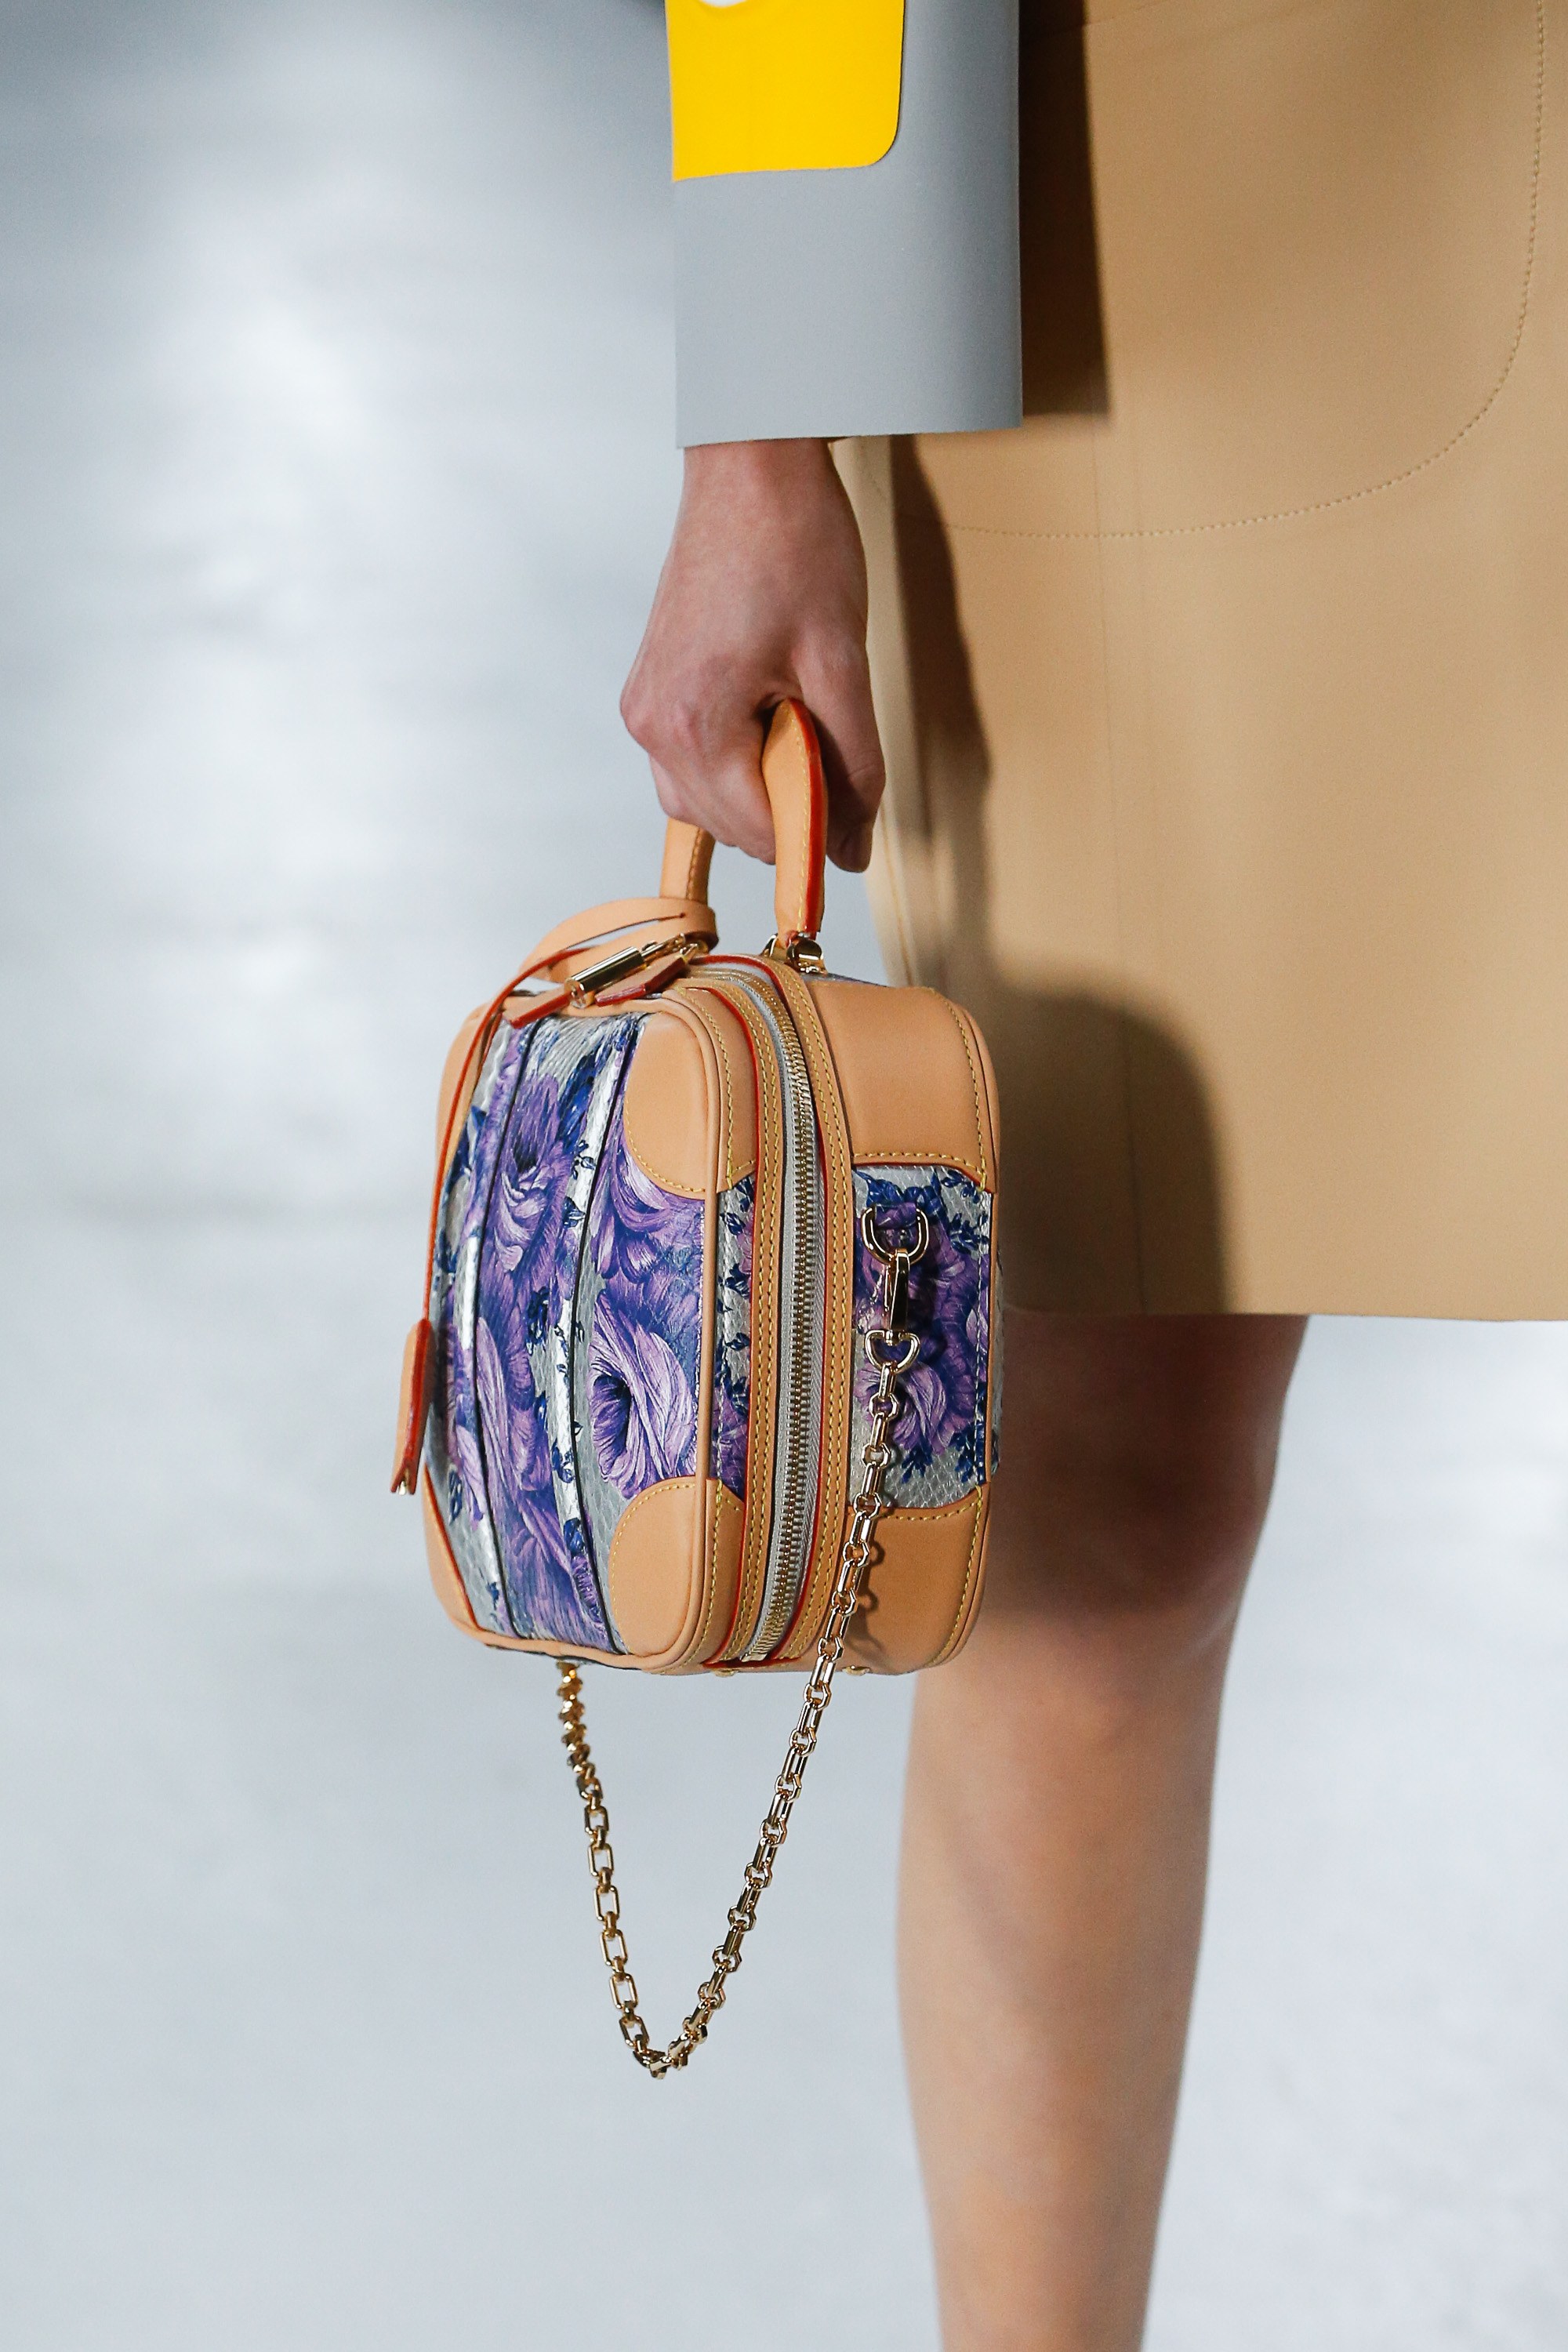 Louis Vuitton 2019 Spring Handbags | SEMA Data Co-op